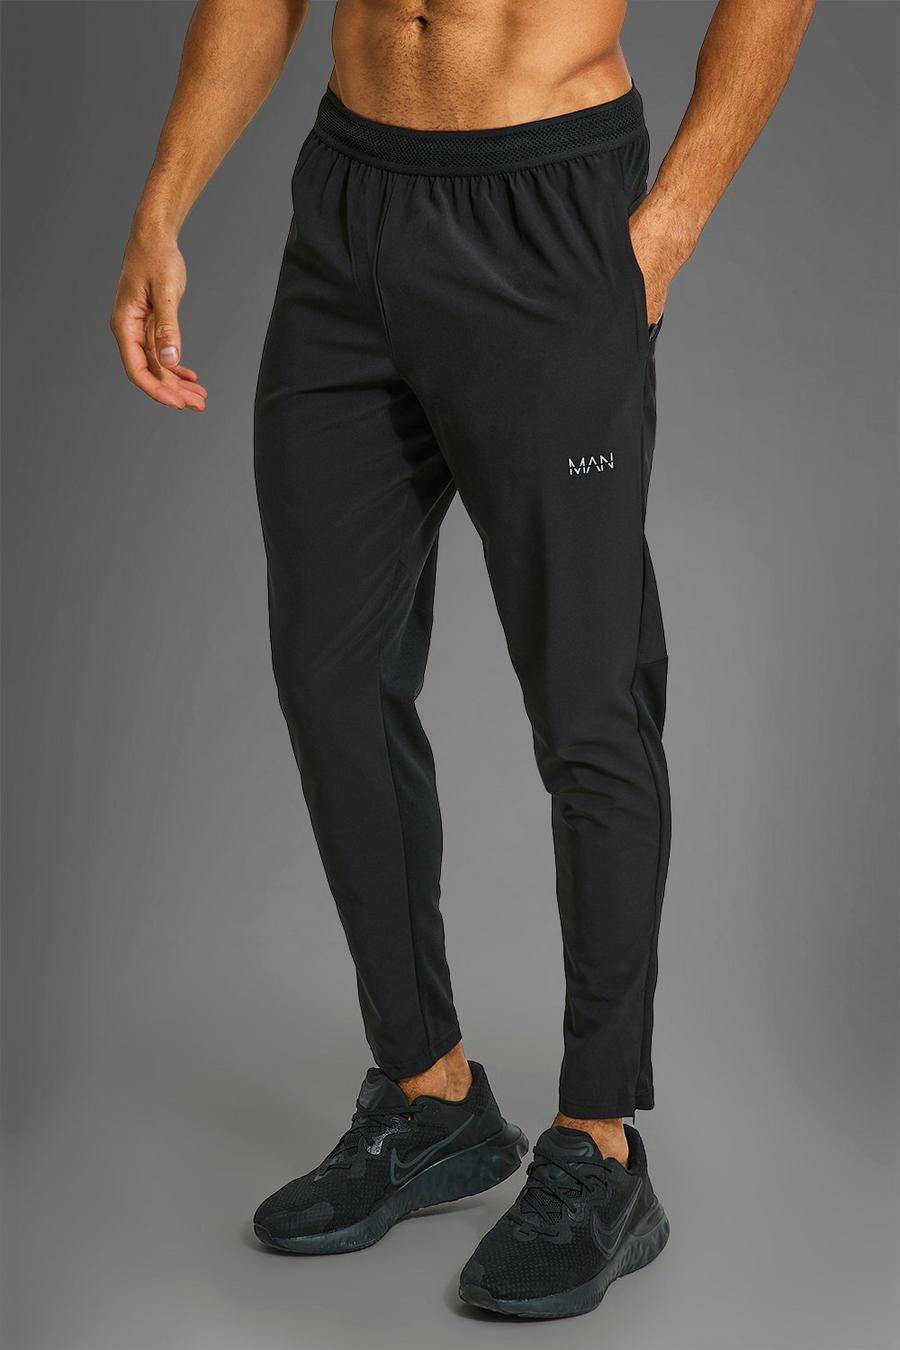 Pantalón deportivo MAN Active deportivo resistente con cremallera en los bolsillos, Black